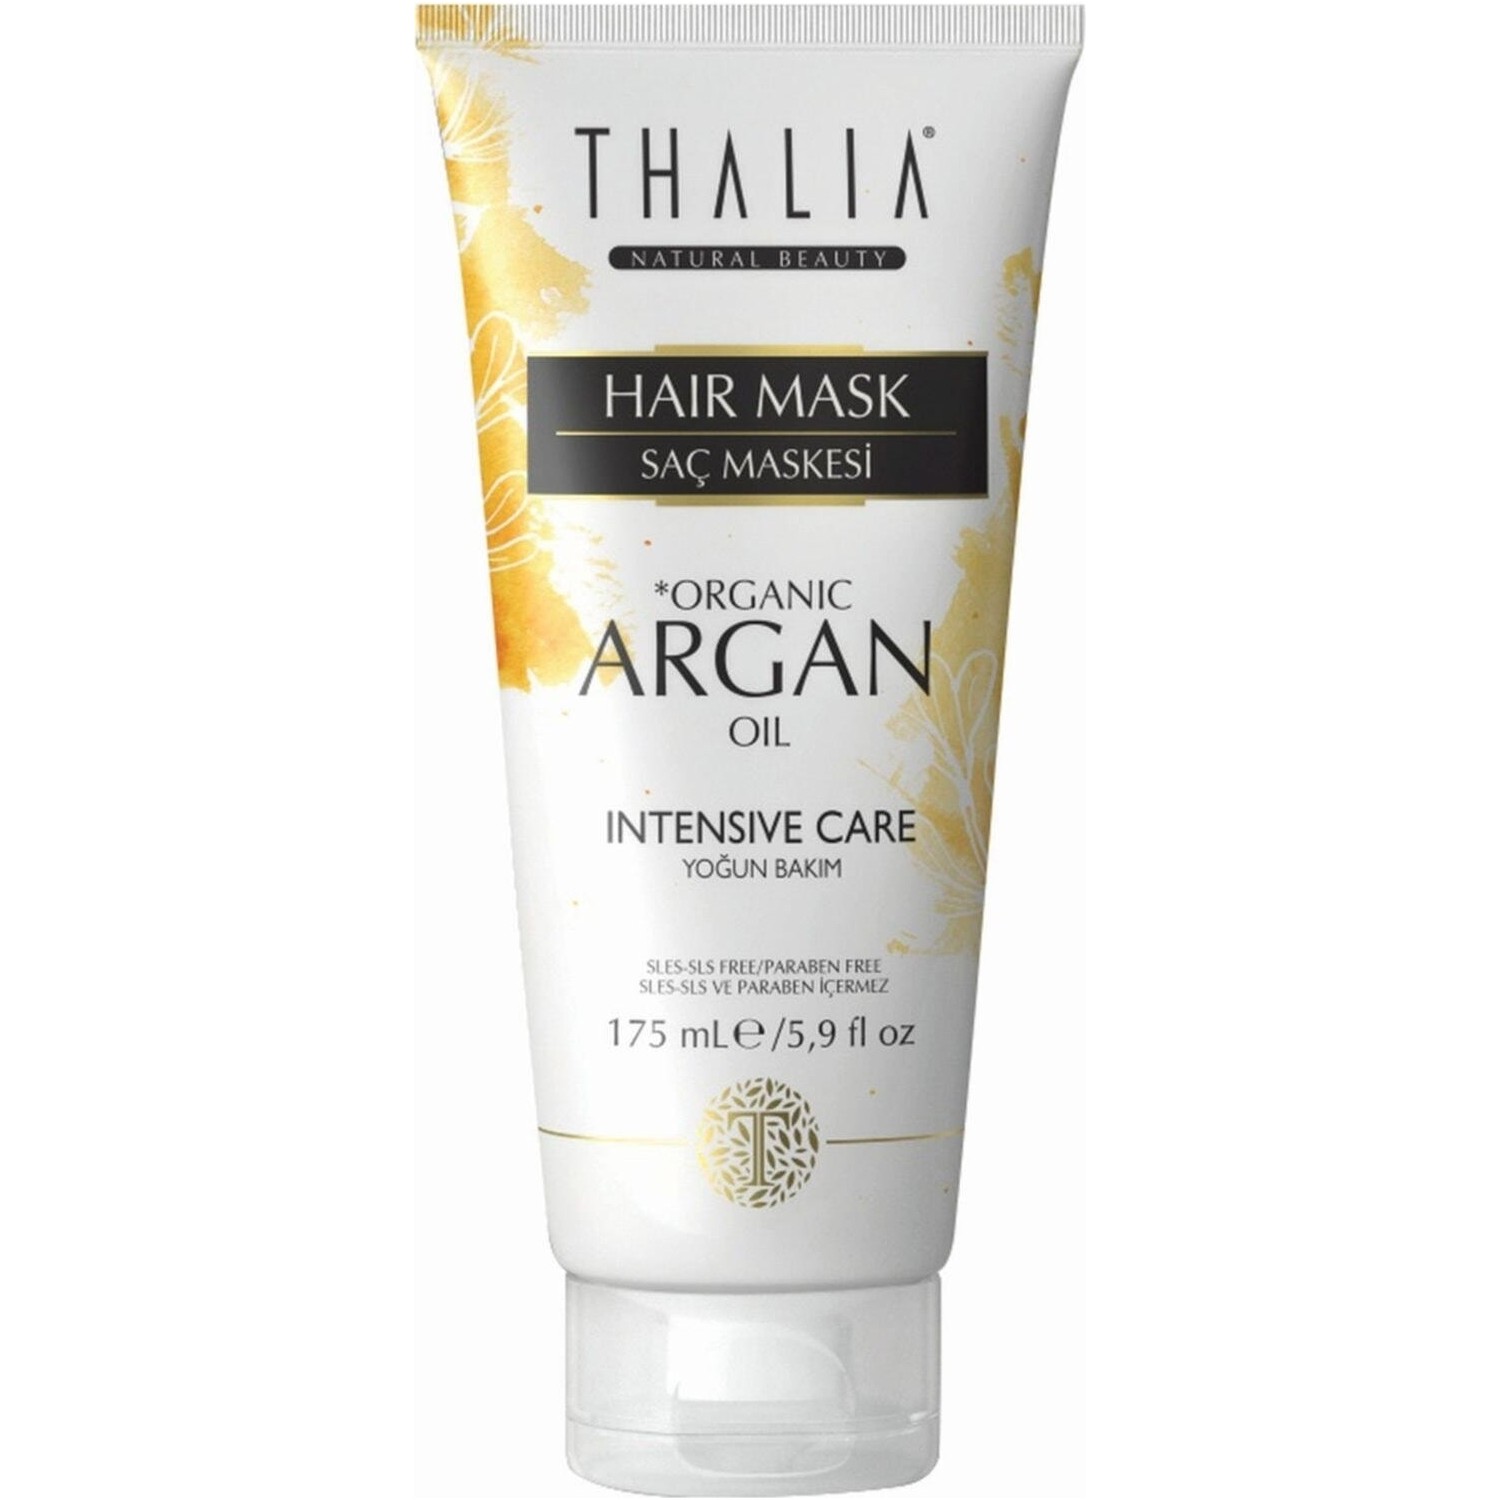 Увлажняющая маска Thalia Organic Argan Oil для волос, 175 мл маска для волос dudu маска для волос argan oil увлажняющая с аргановым маслом